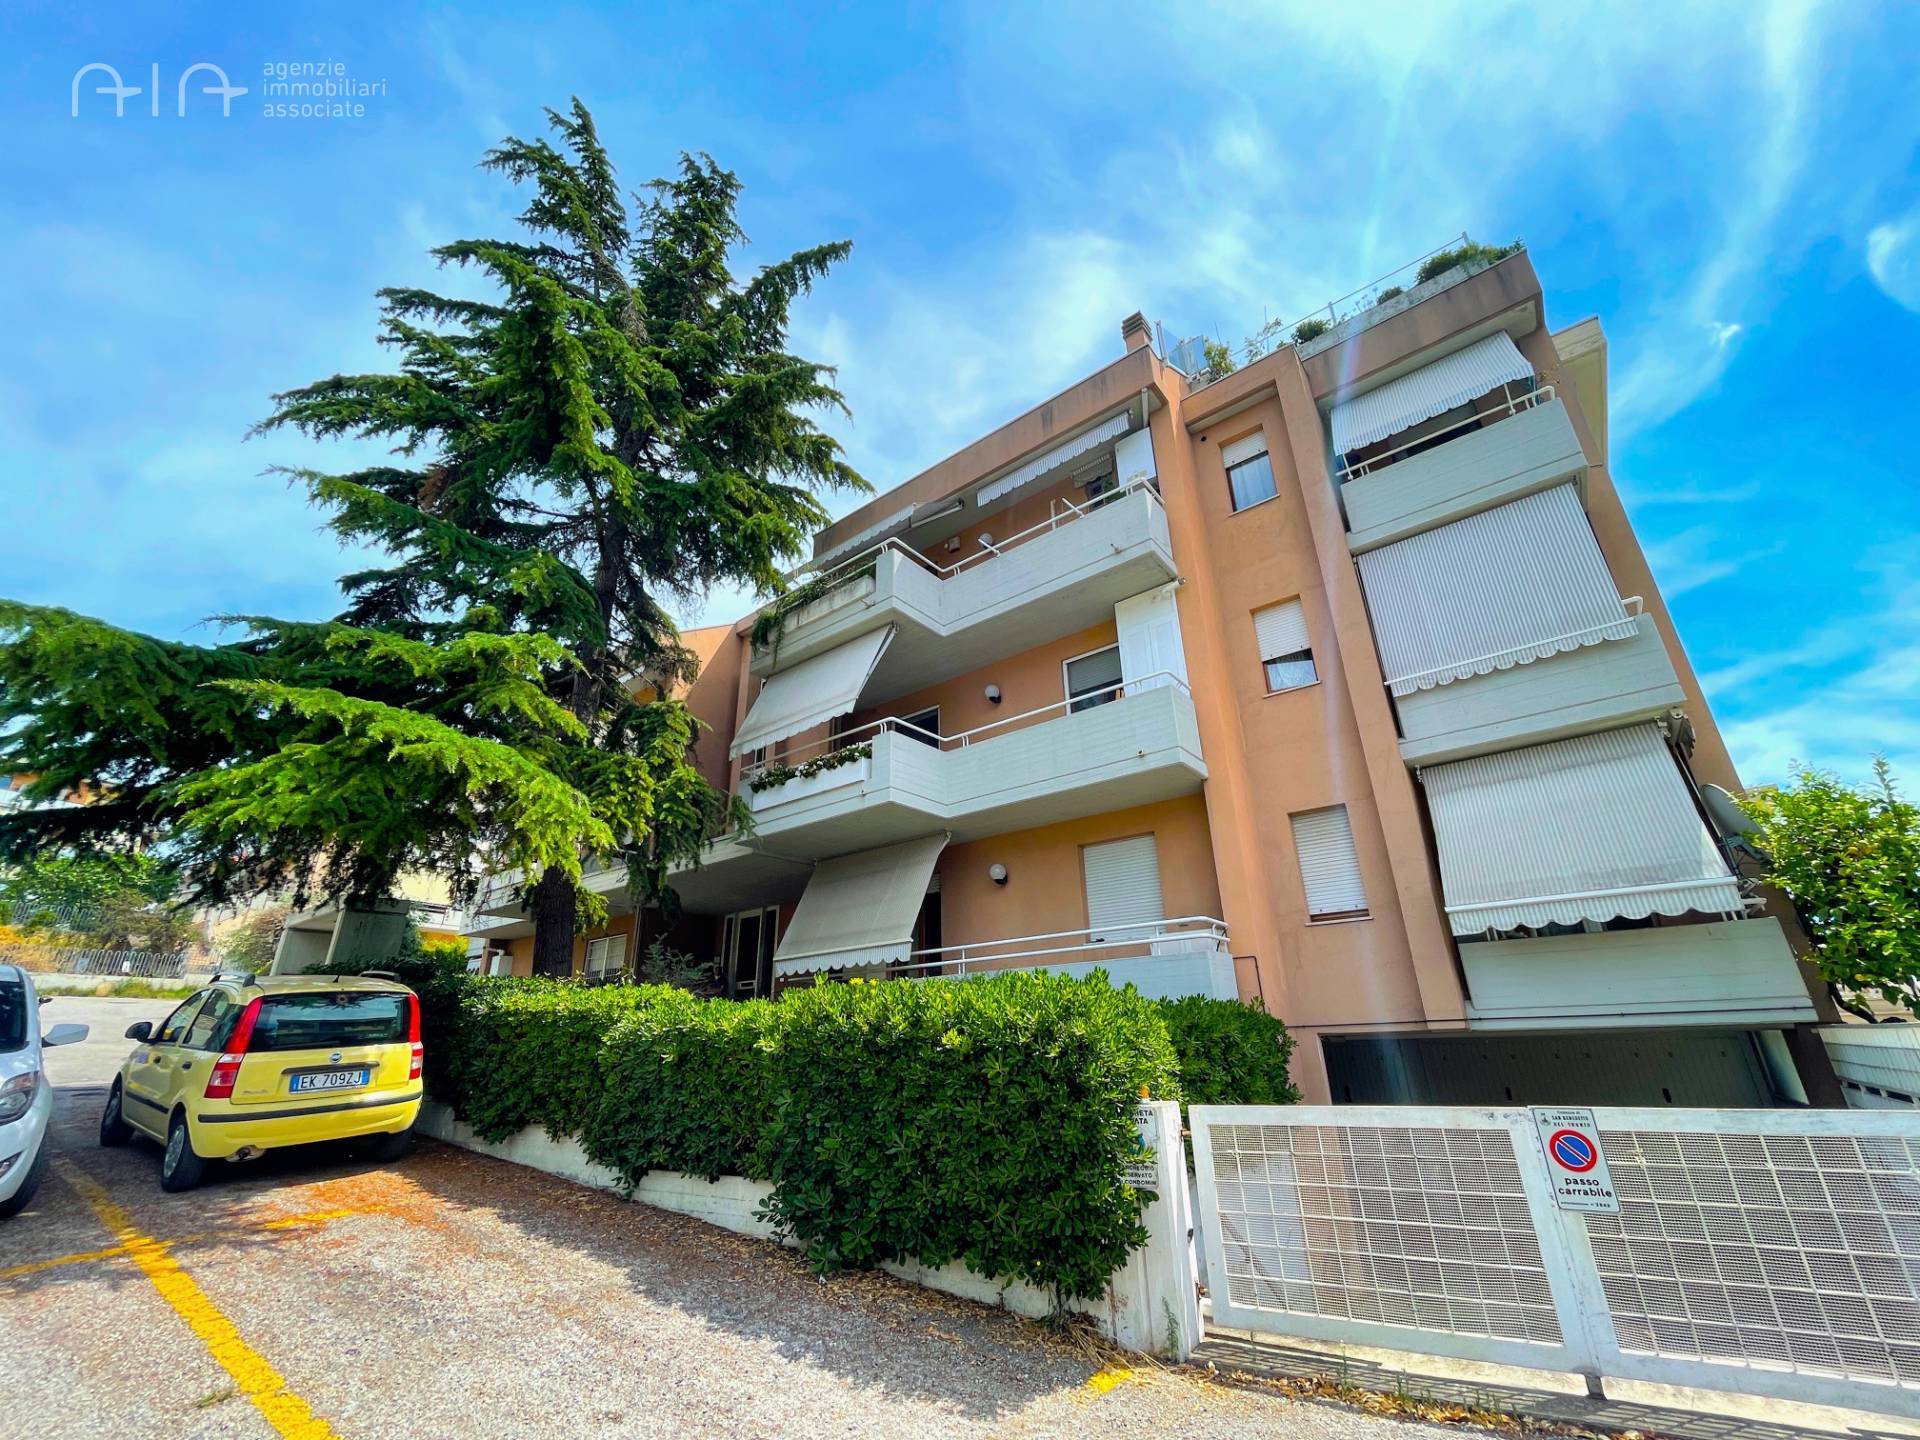 Appartamento con terrazzo, San Benedetto del Tronto residenziale nord